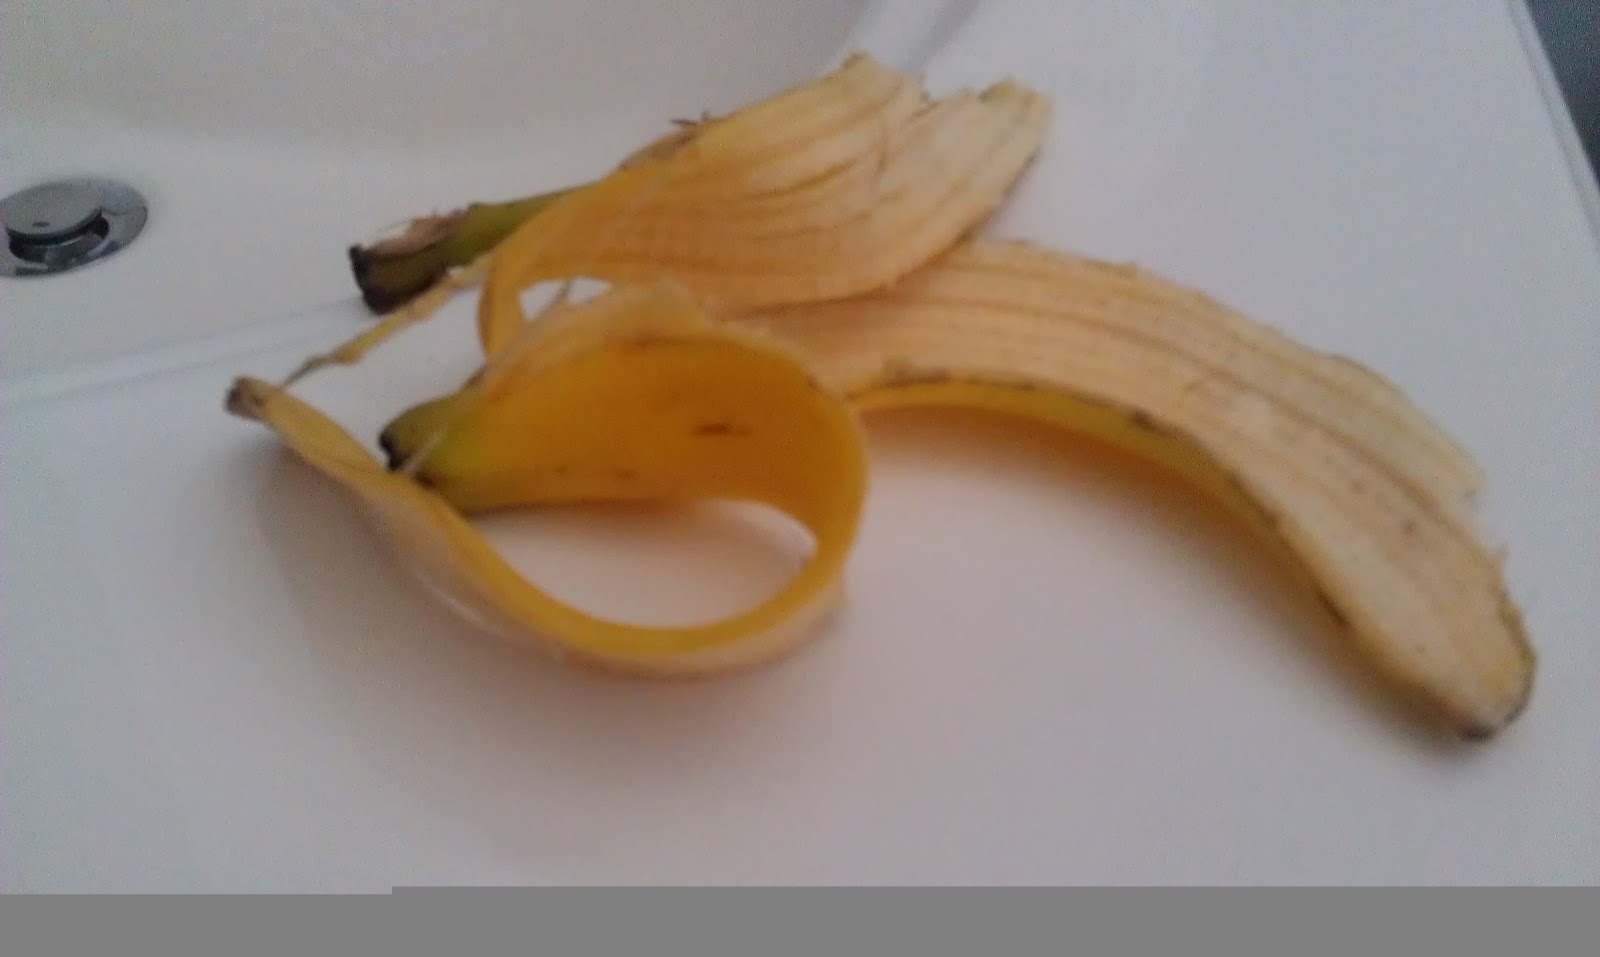 Banana real